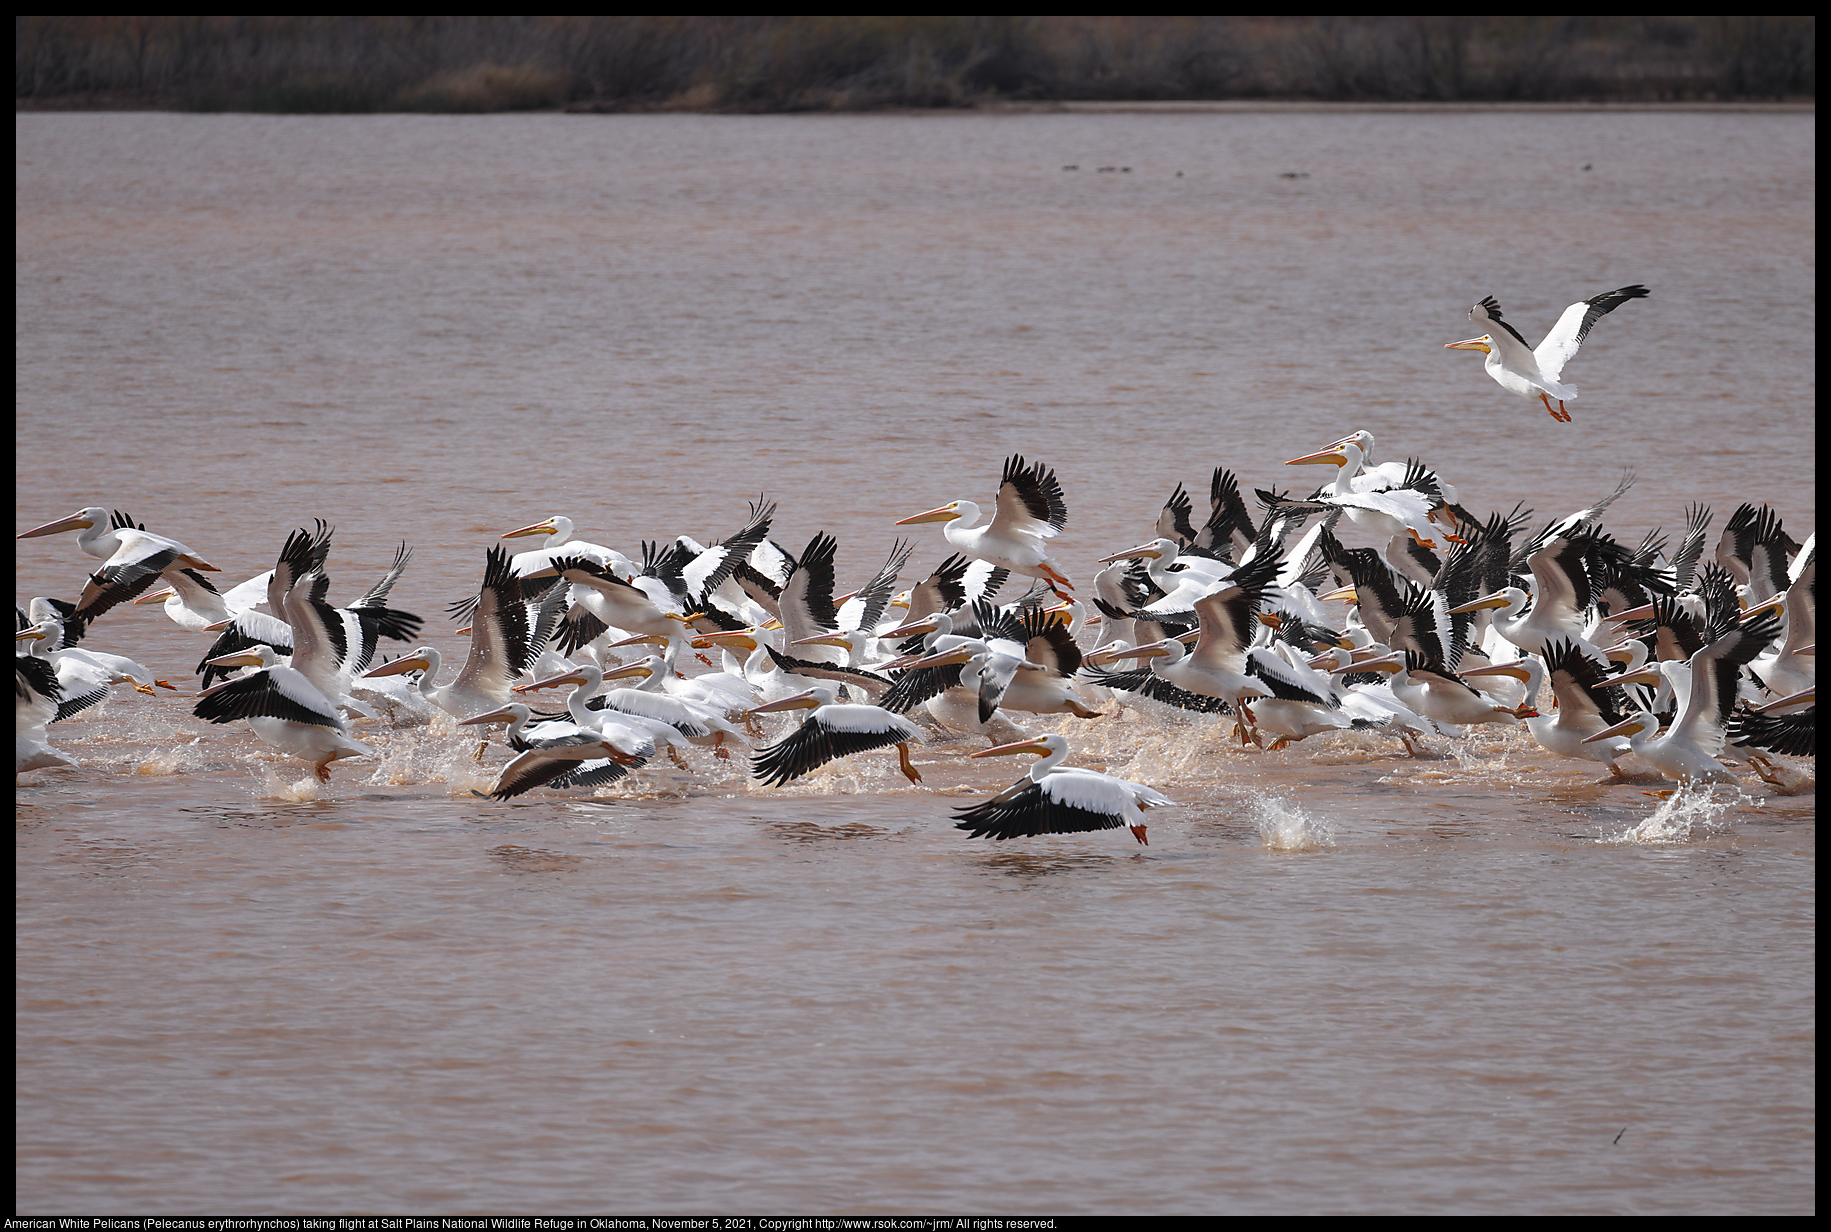 American White Pelicans (Pelecanus erythrorhynchos) taking flight at Salt Plains National Wildlife Refuge in Oklahoma, November 5, 2021